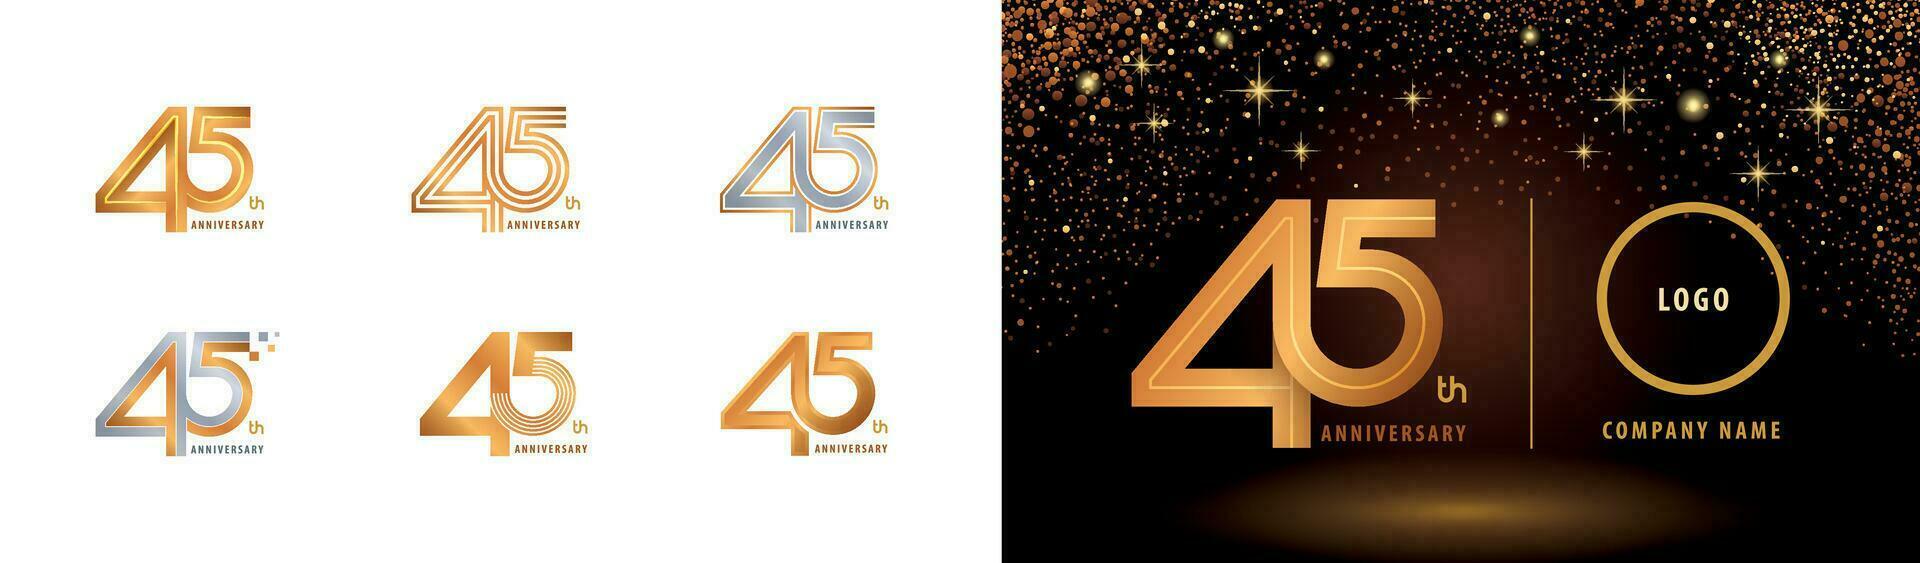 reeks van 45e verjaardag logotype ontwerp, veertig vijf jaren vieren verjaardag logo vector